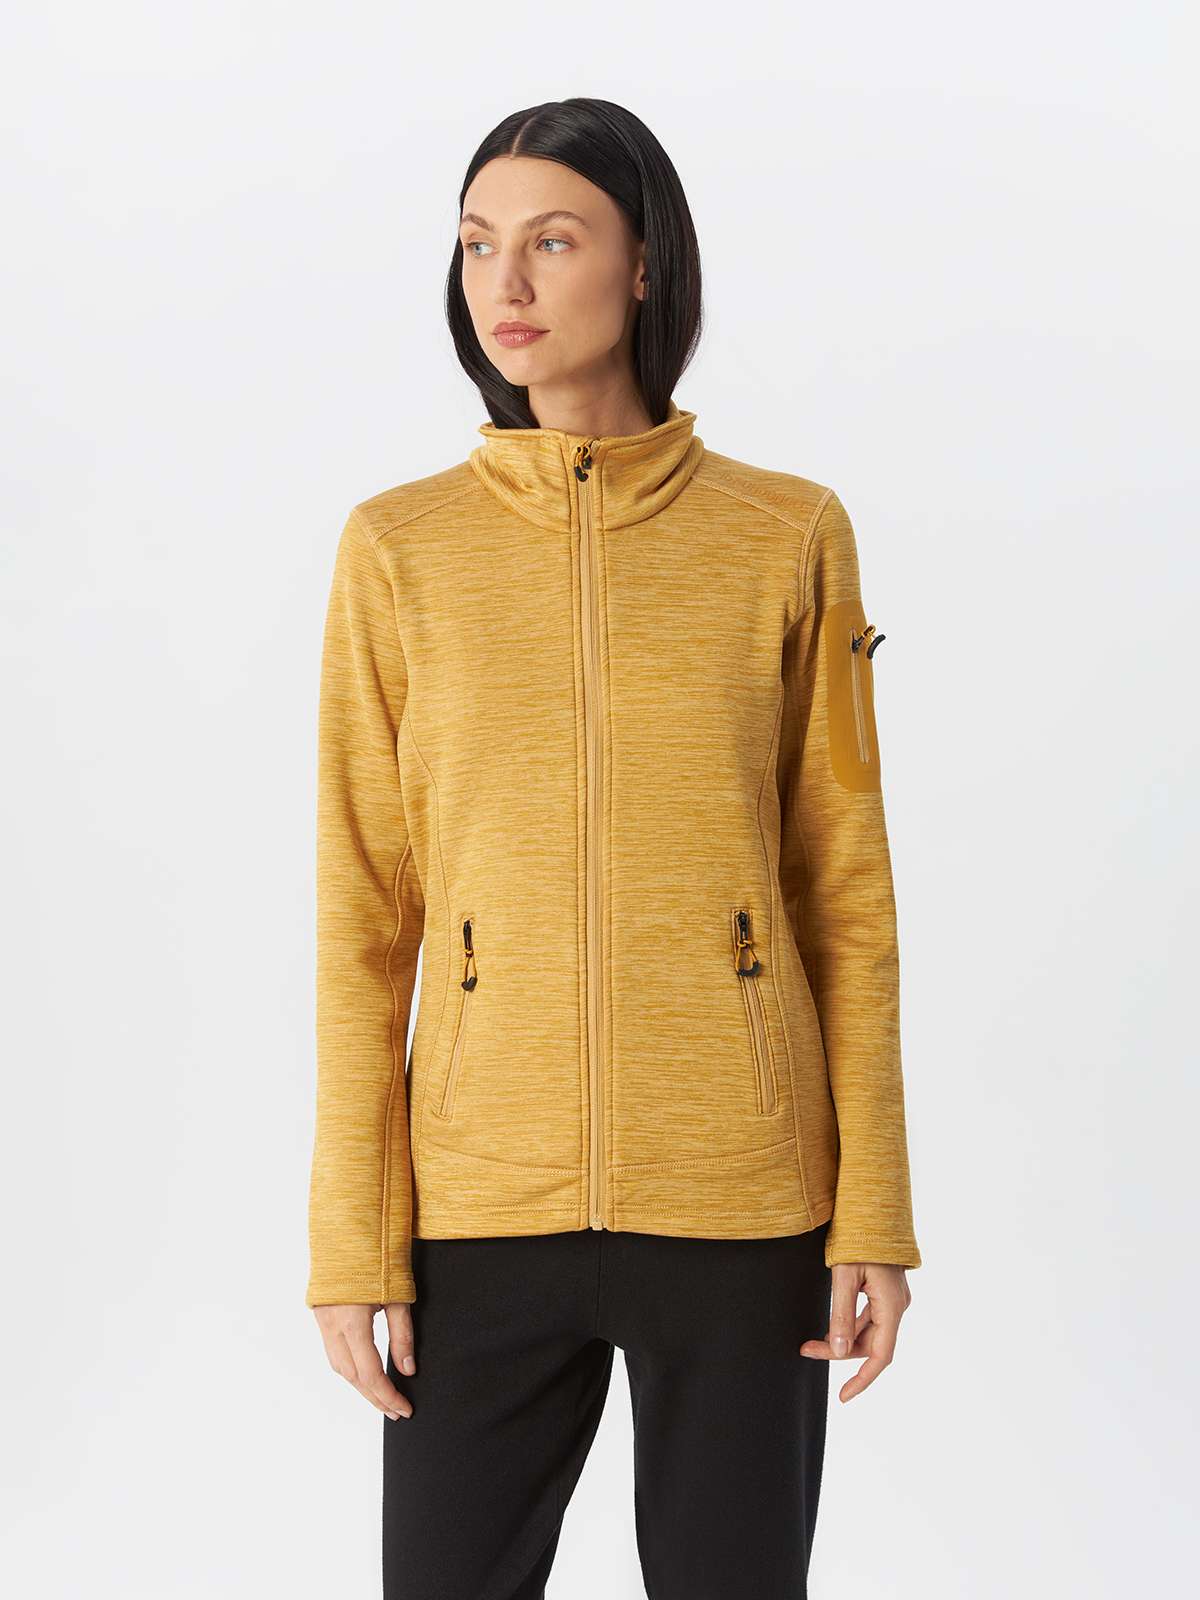 Куртка Fundango для женщин, софтшелл, размер S, 2MAD105, песочная